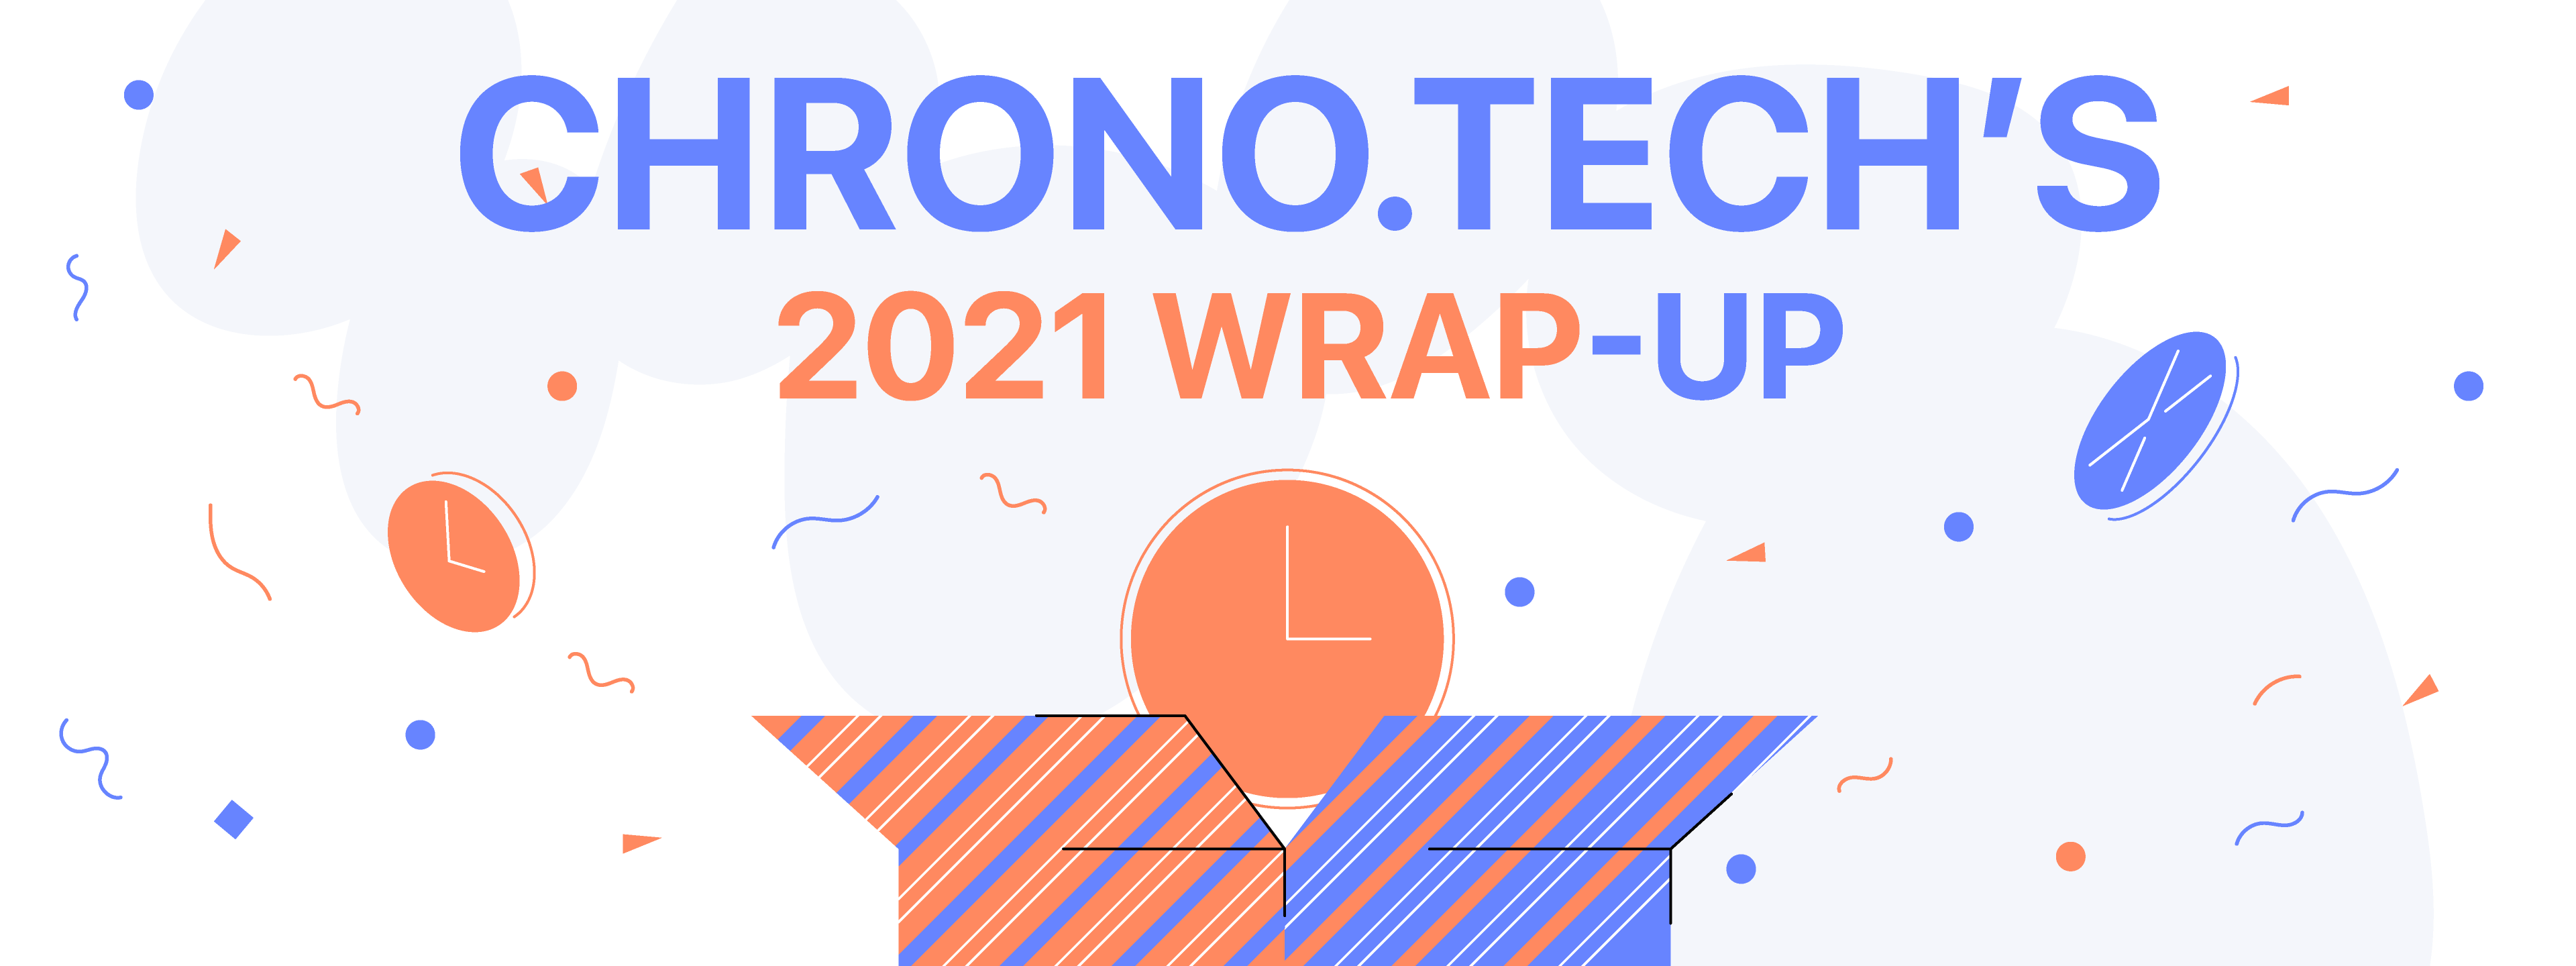 Chrono.tech’s 2021 Wrap-Up